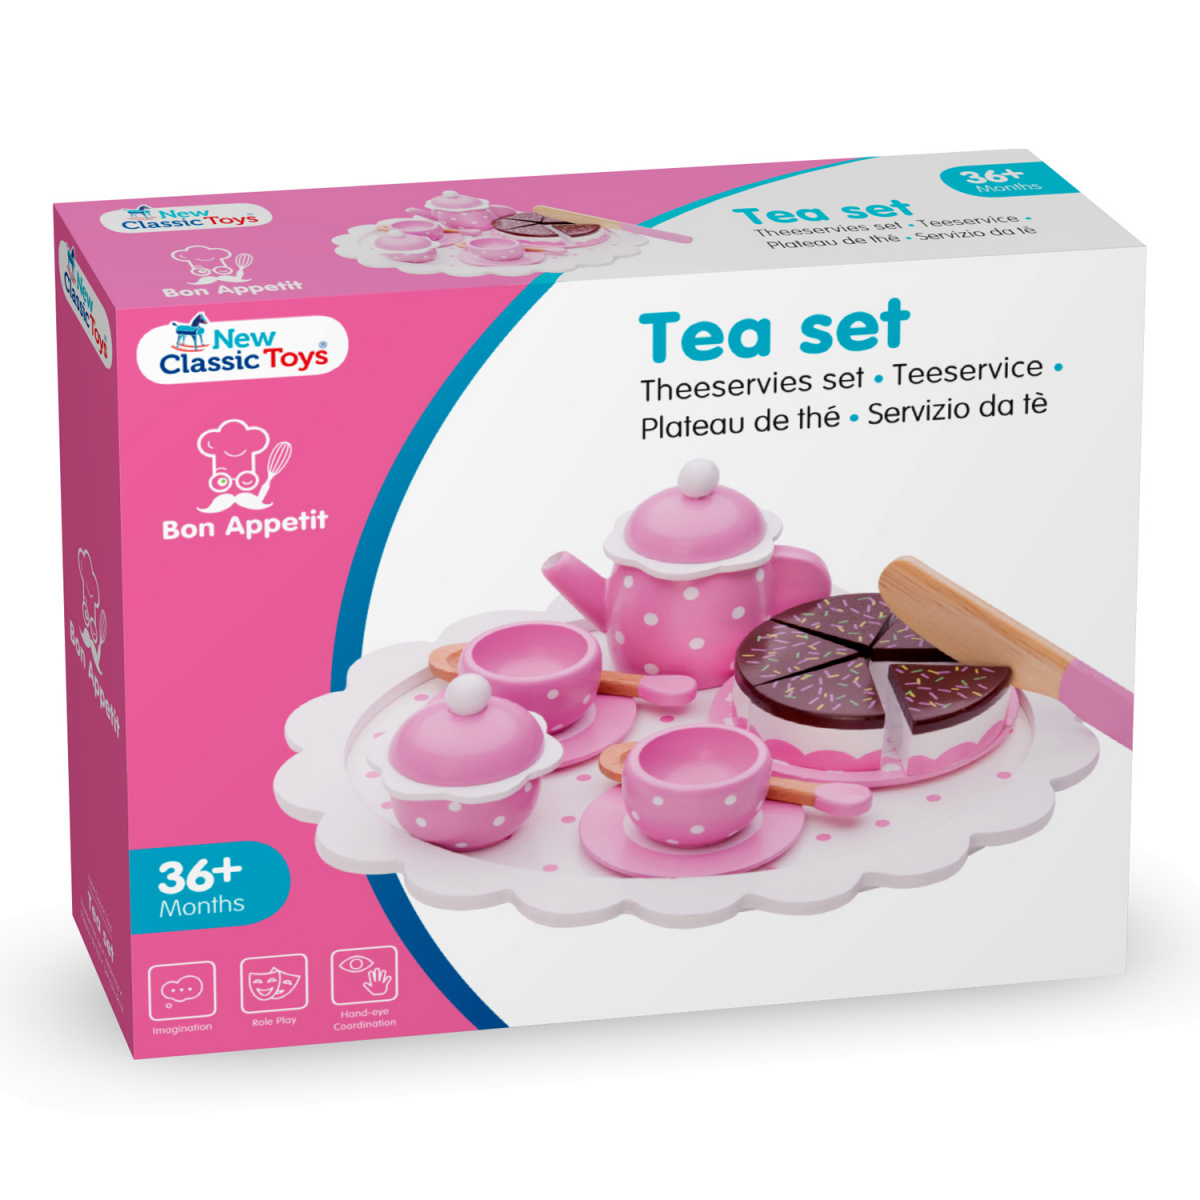 Игрушечная посуда New Classic Toys Чайный набор, розовый (10620) - фото 4